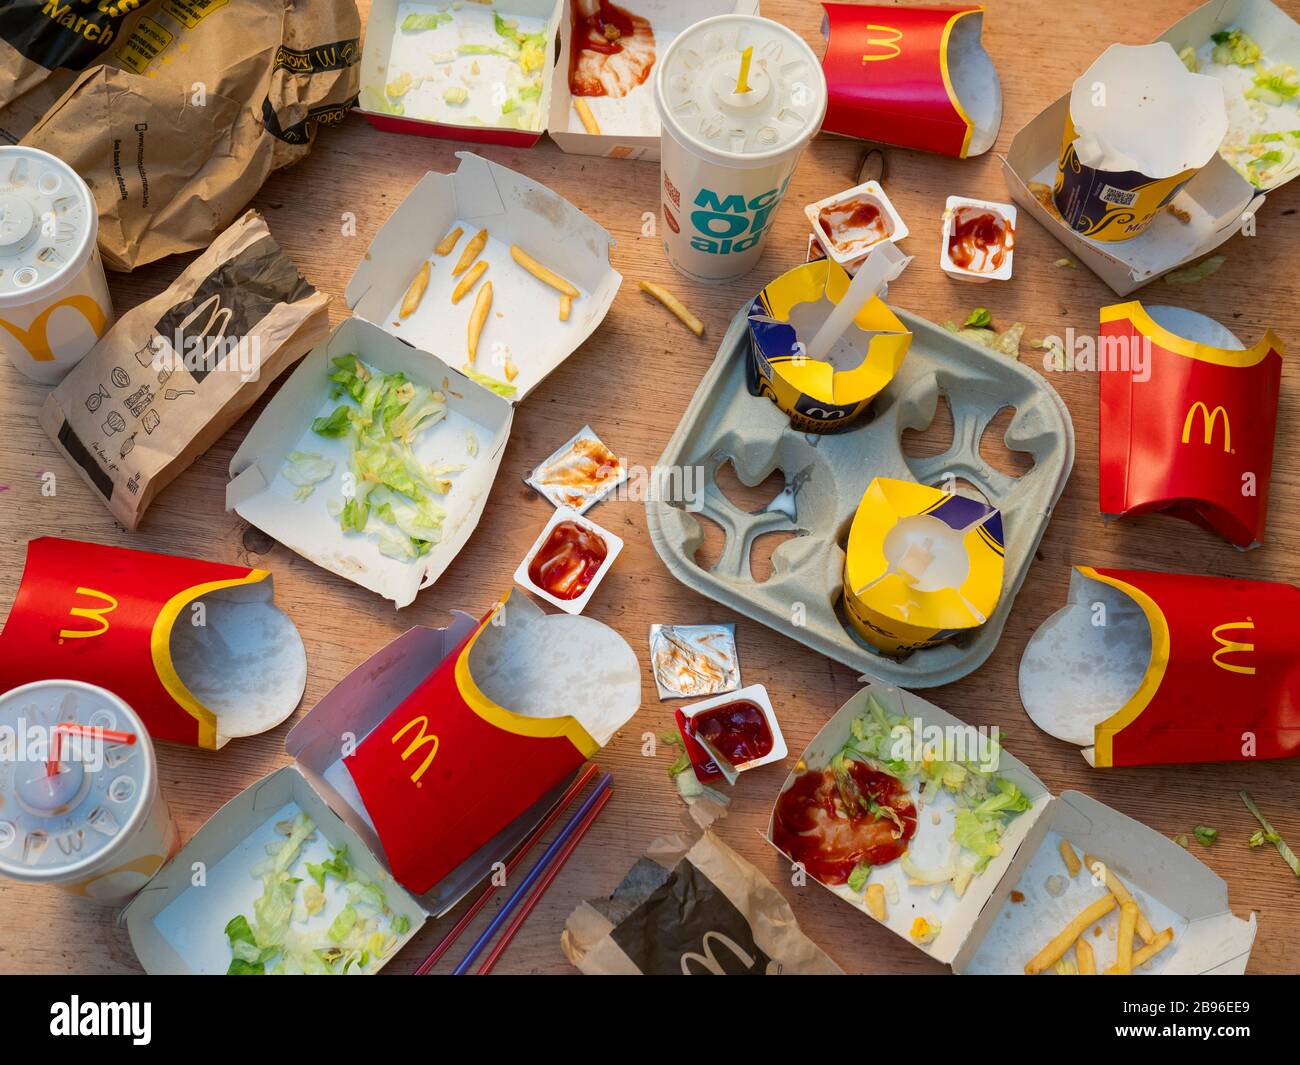 Empty McDonald's Take Away Food Packaging, McDonald's è una catena di ristoranti fast food fondata nel 1940. Foto Stock